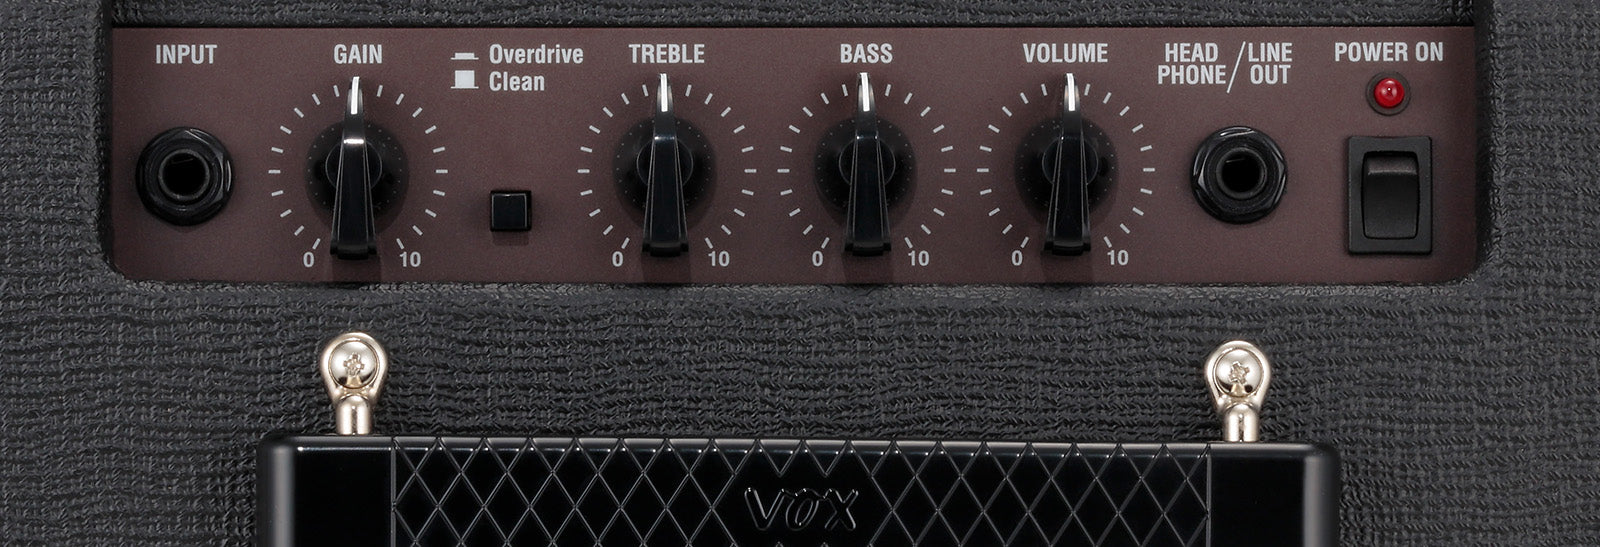 Vox PATHFINDER10 10 watt Guitar Combo